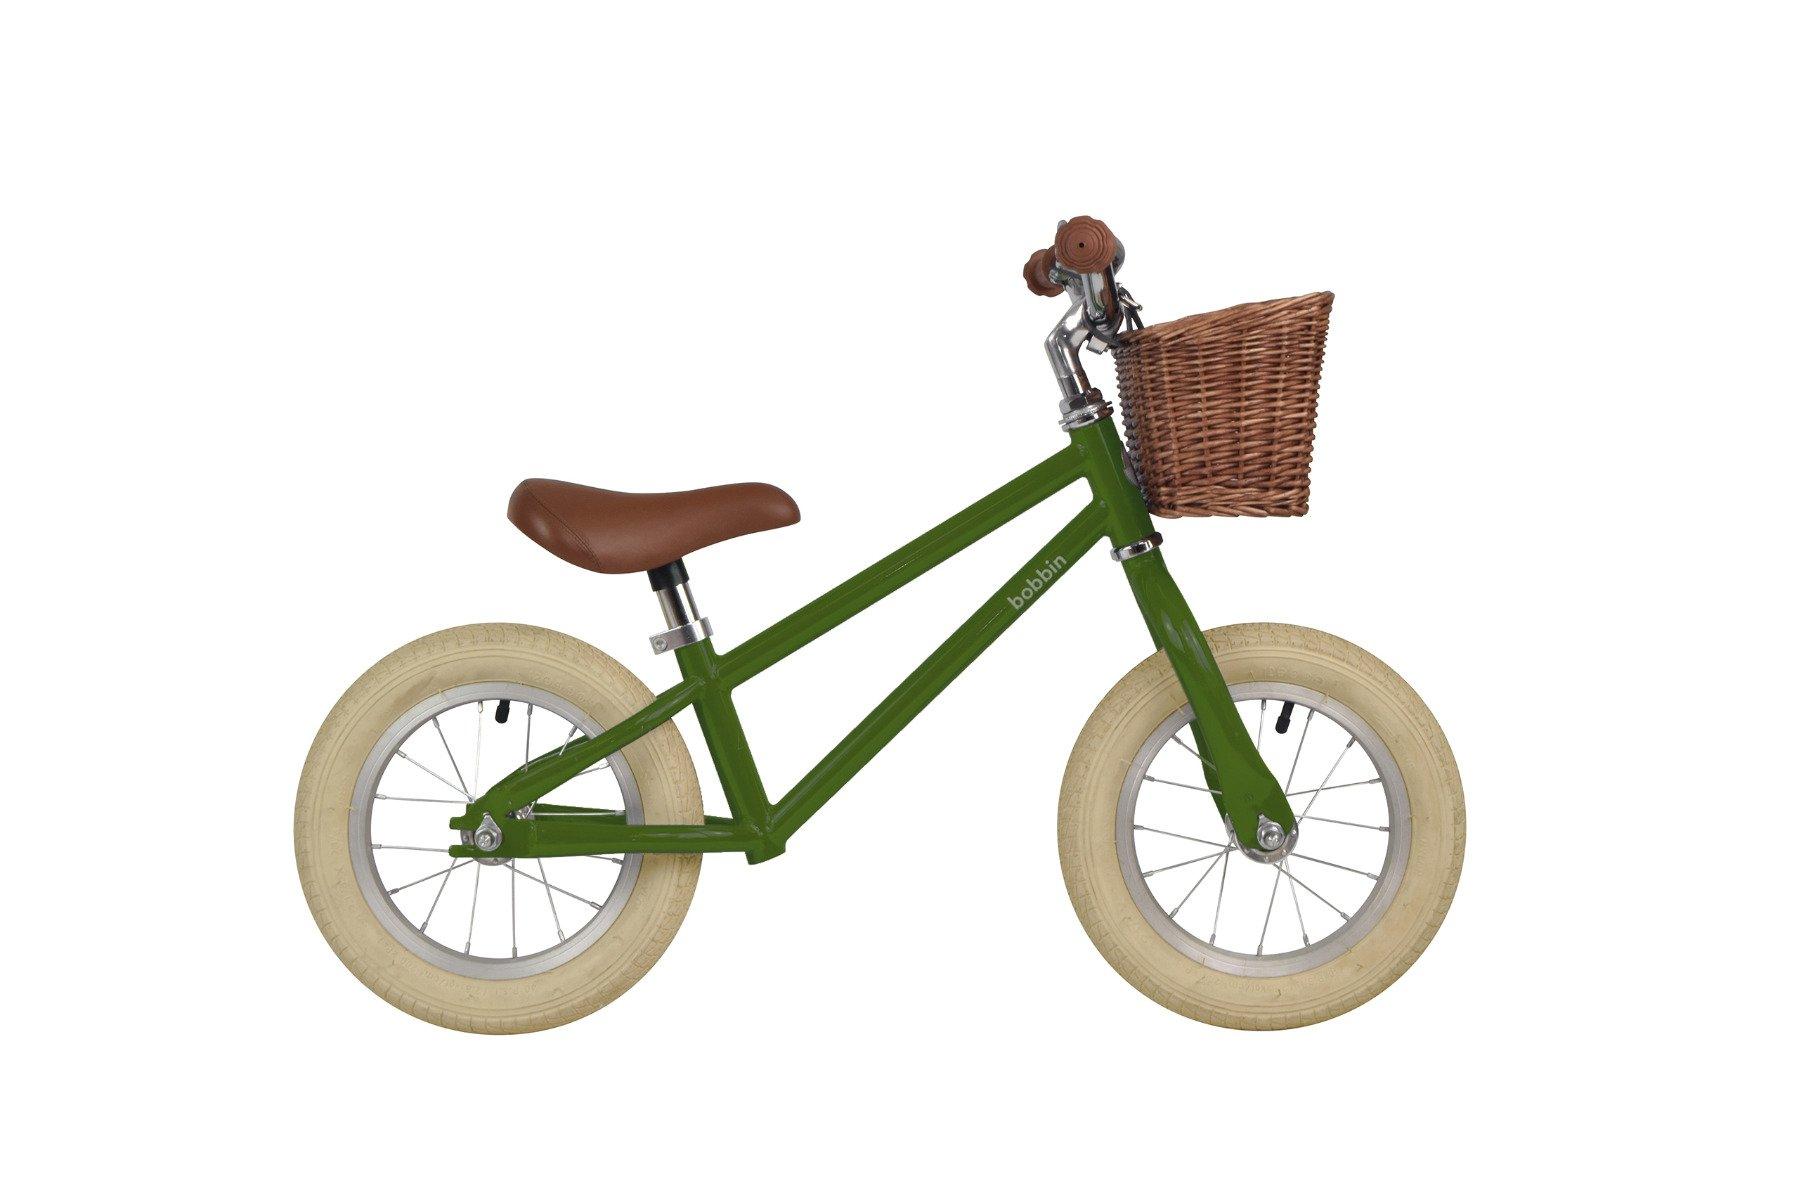 Bobbin  Laufrad Moonbug Balance Bike, 2-4 Jahre, pea green, Bobbin 